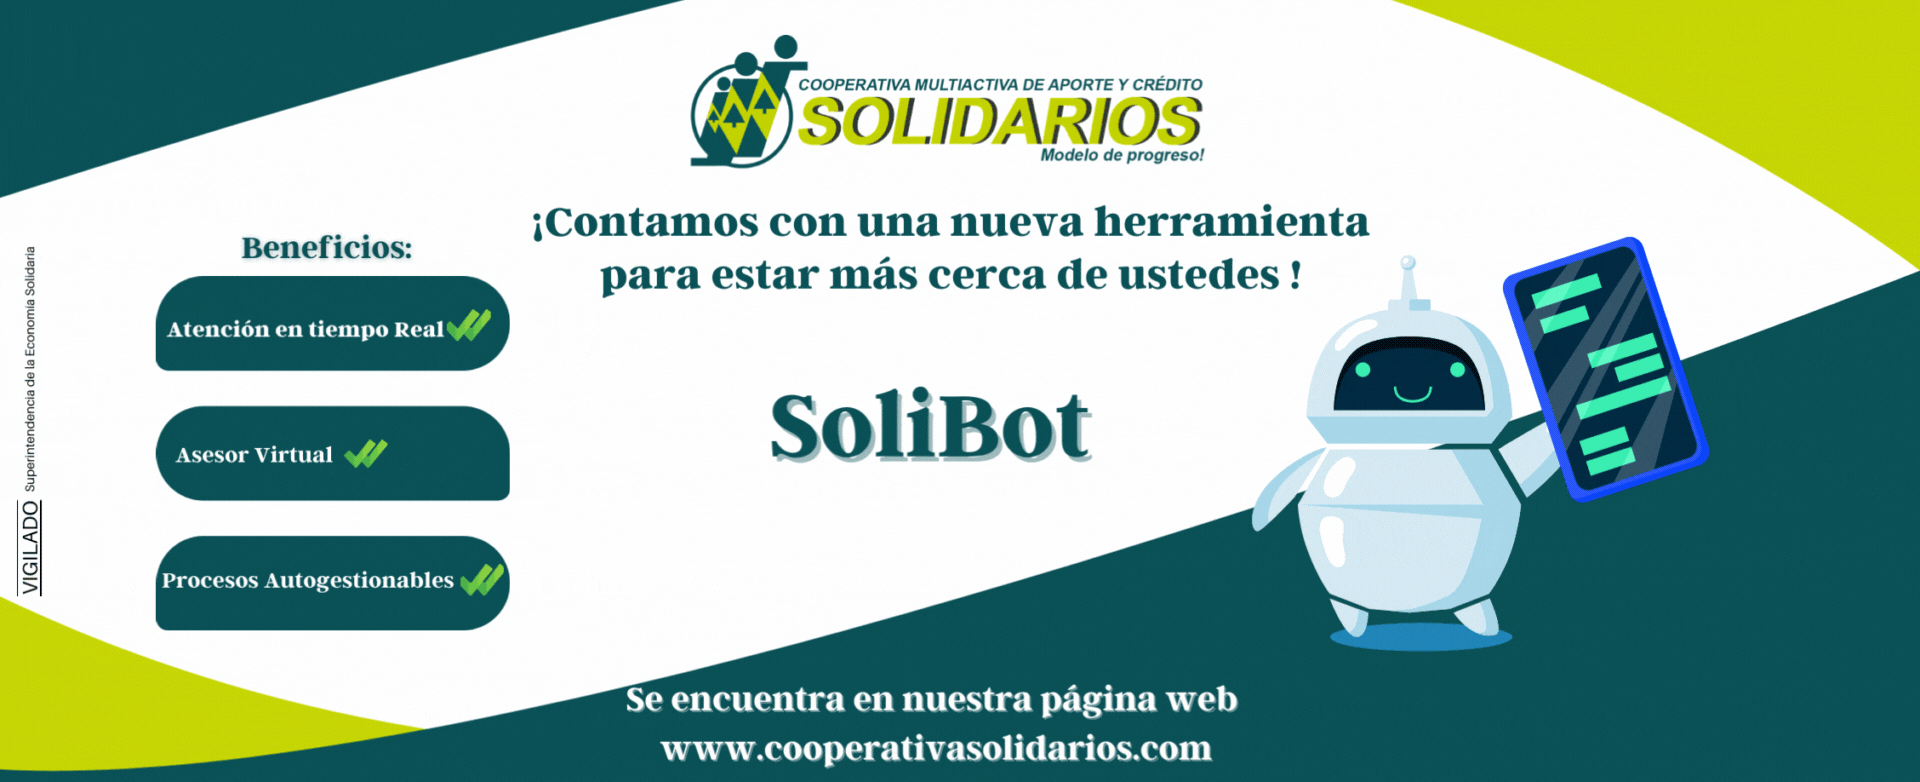 SoliBot_Banner